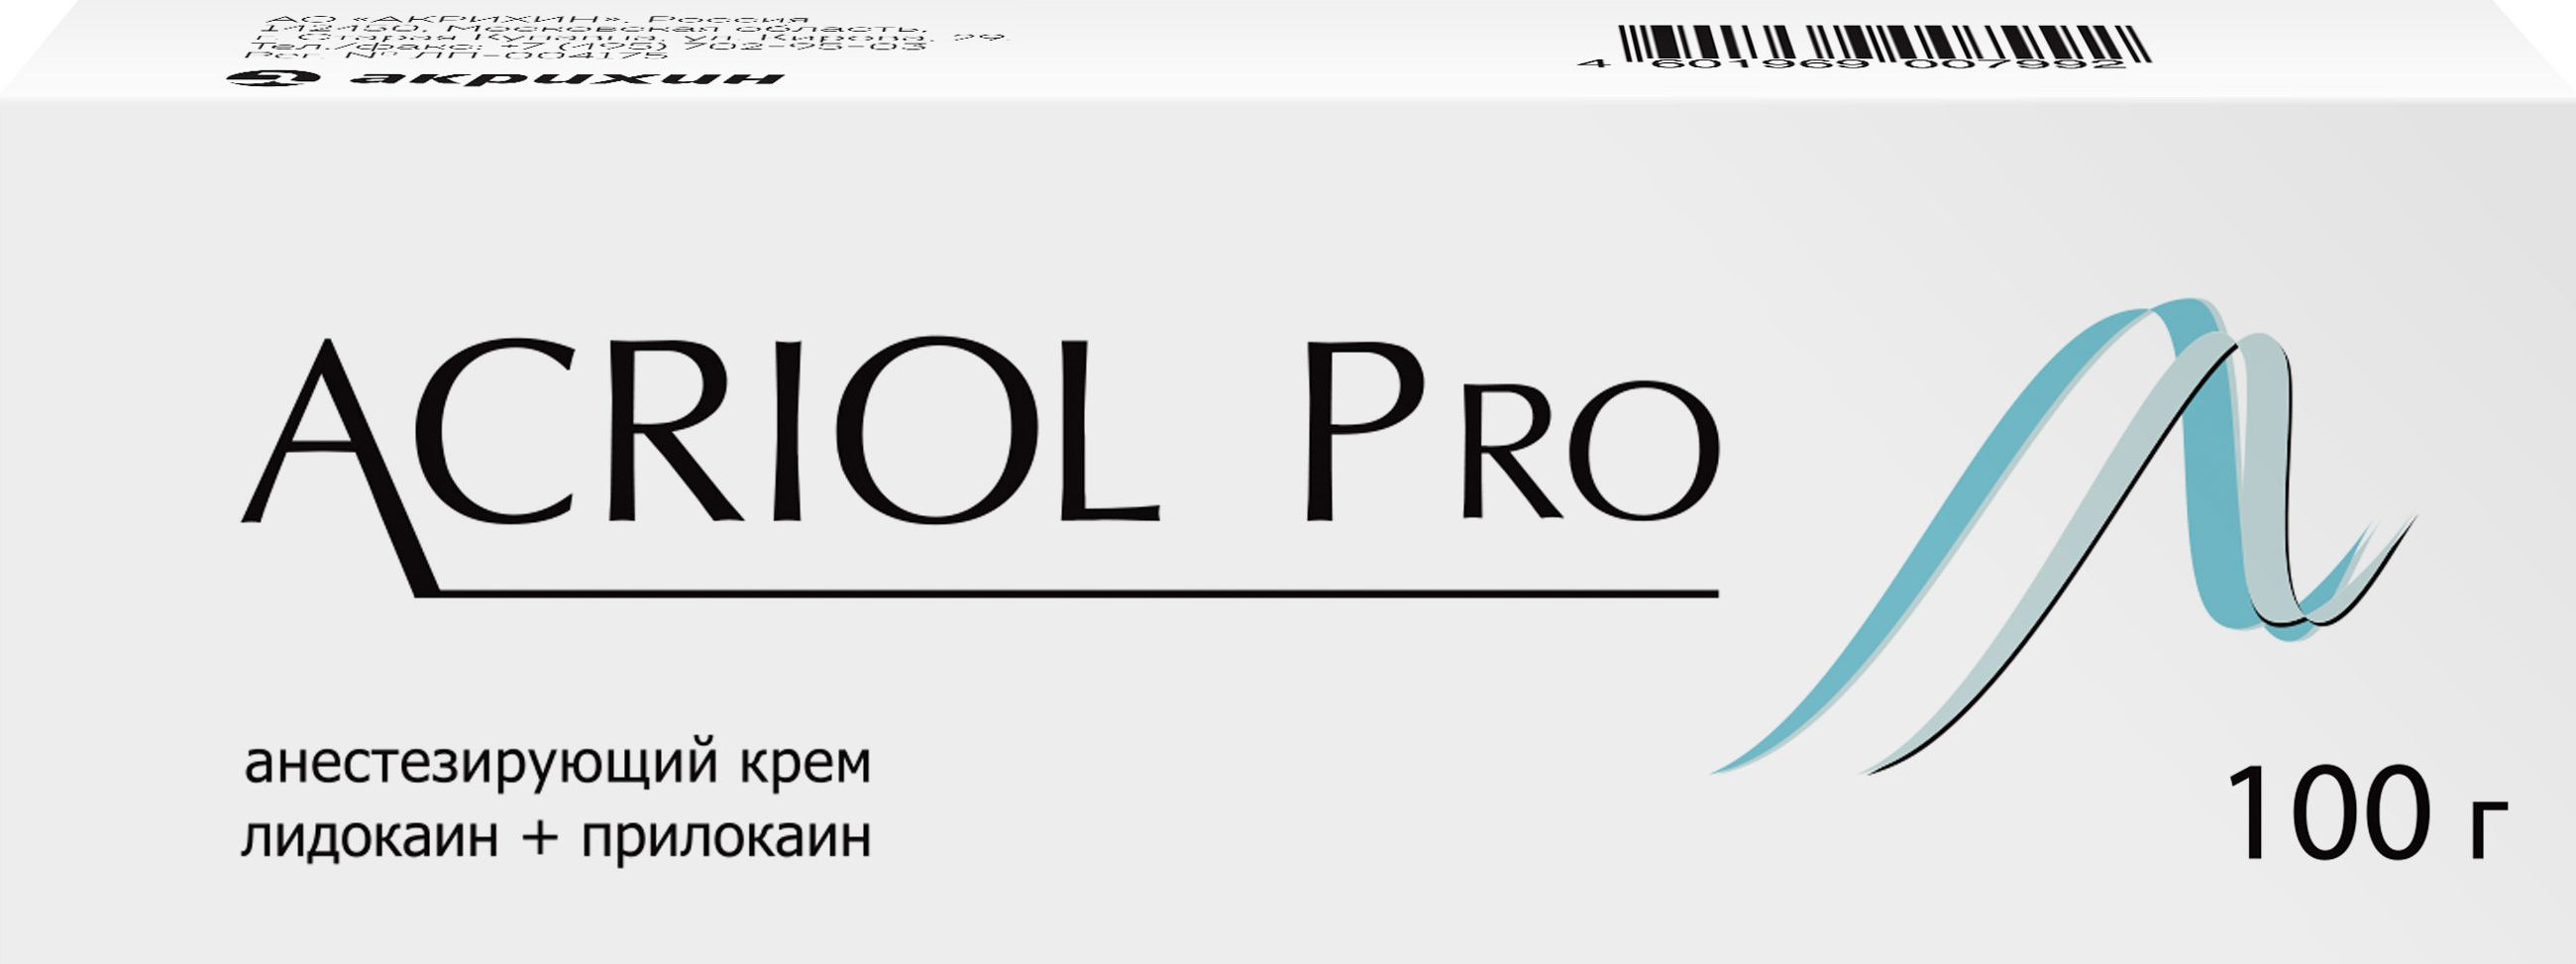 Акриол Про, крем для местного и наружного применения, 2,5 % + 2,5%, 100 г.